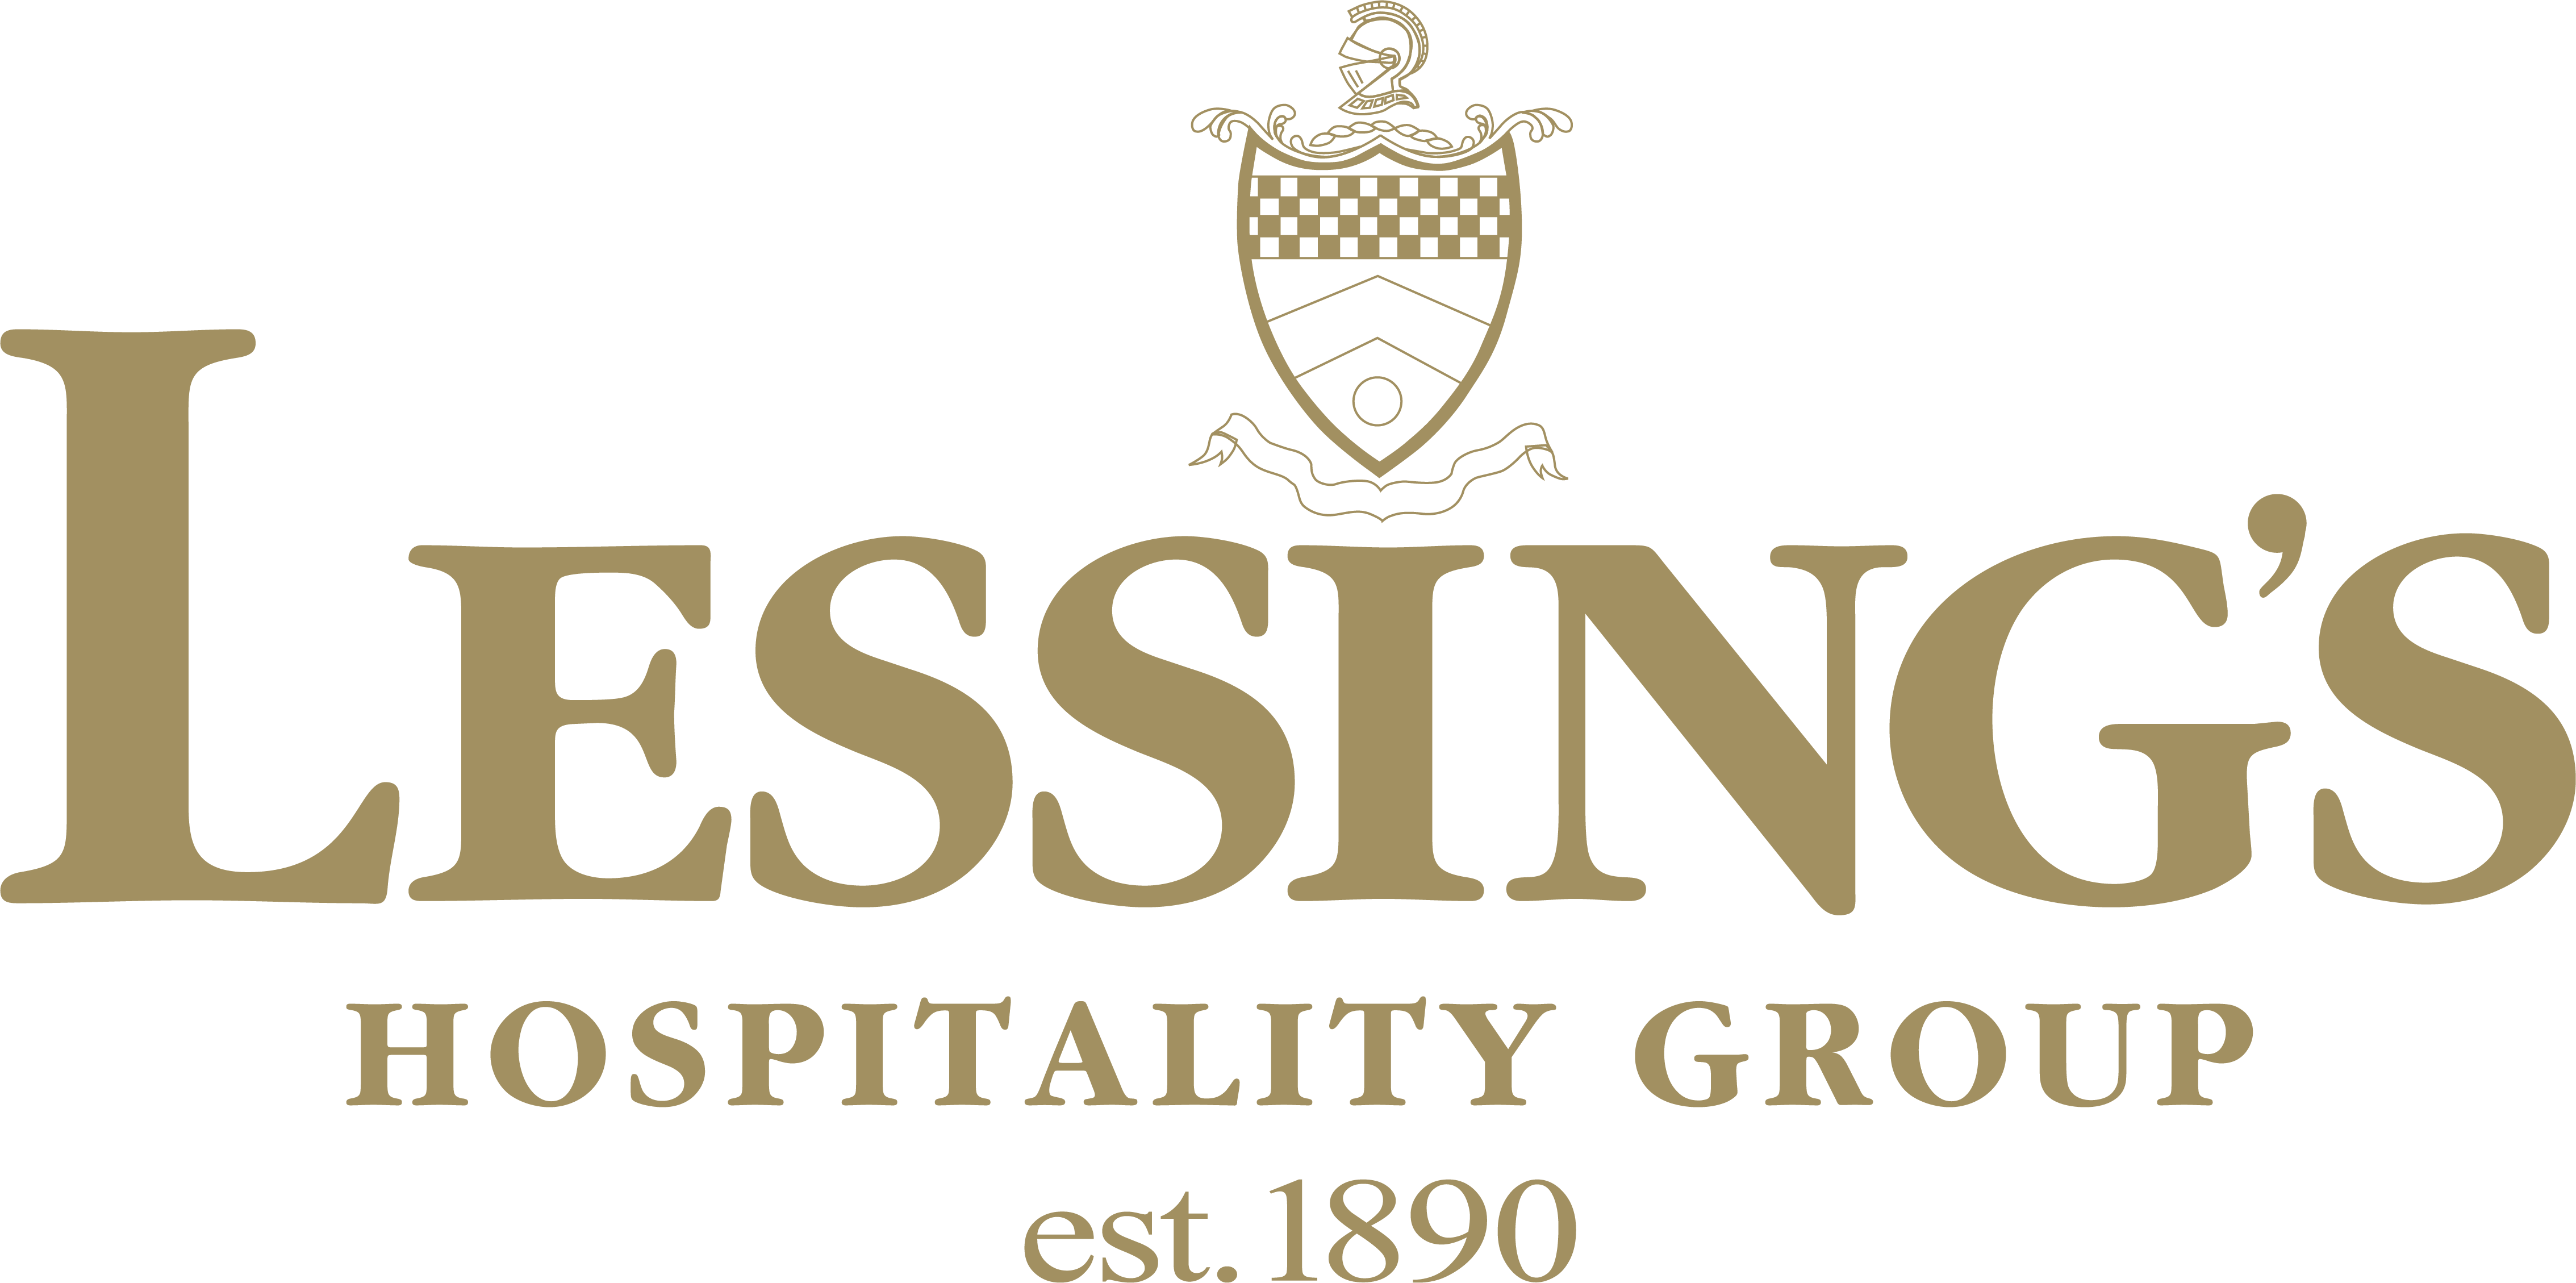 Lessing's Hospitality Group logo